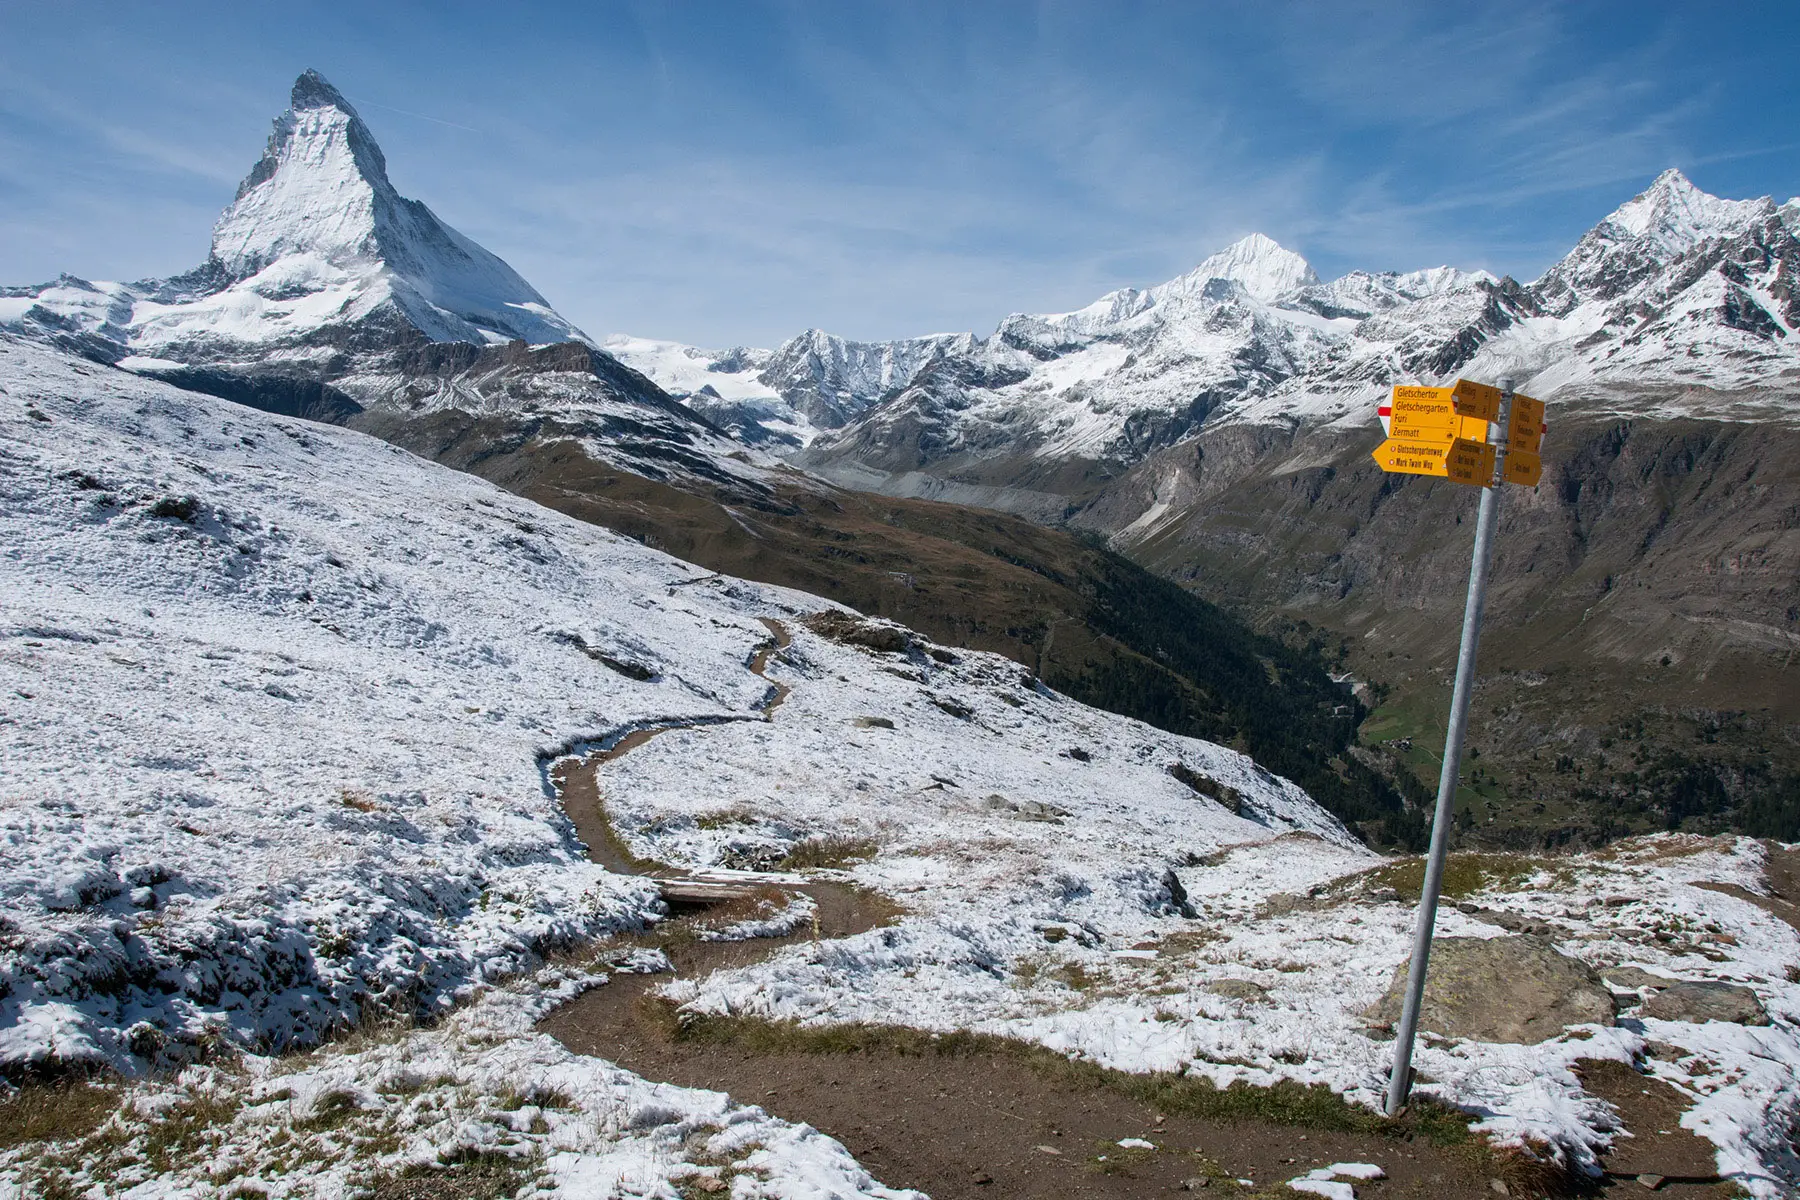 Wanderweg signs to indicate hiking trails in Switzerland